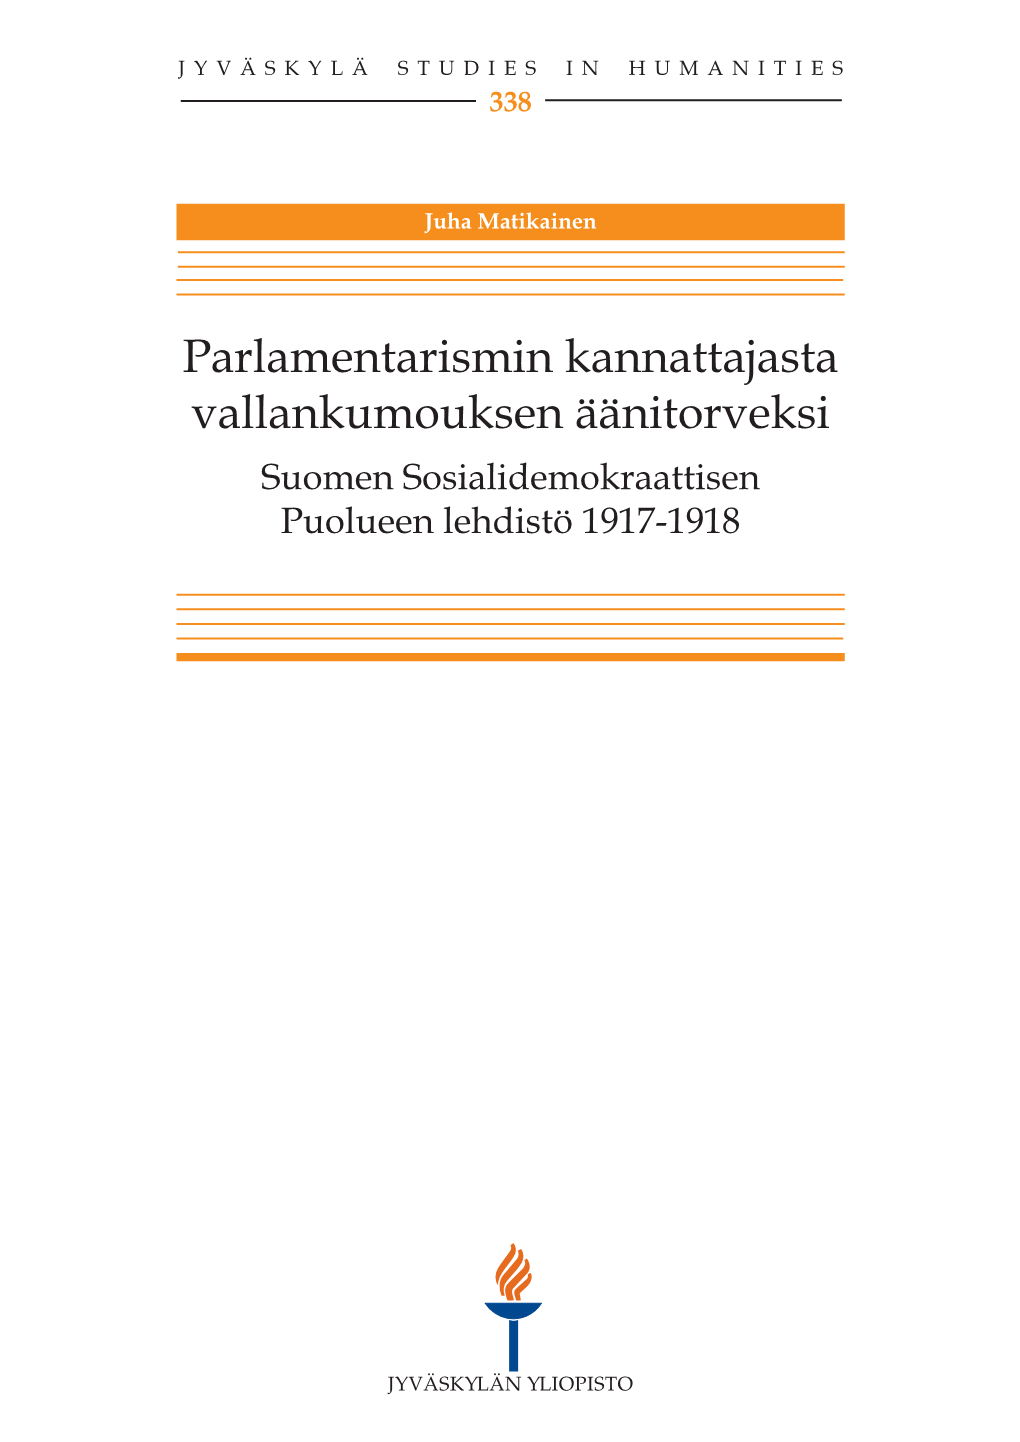 Suomen Sosialidemokraattisen Puolueen Lehdistö 1917-1918 JYVÄSKYLÄ STUDIES in Humanities 338